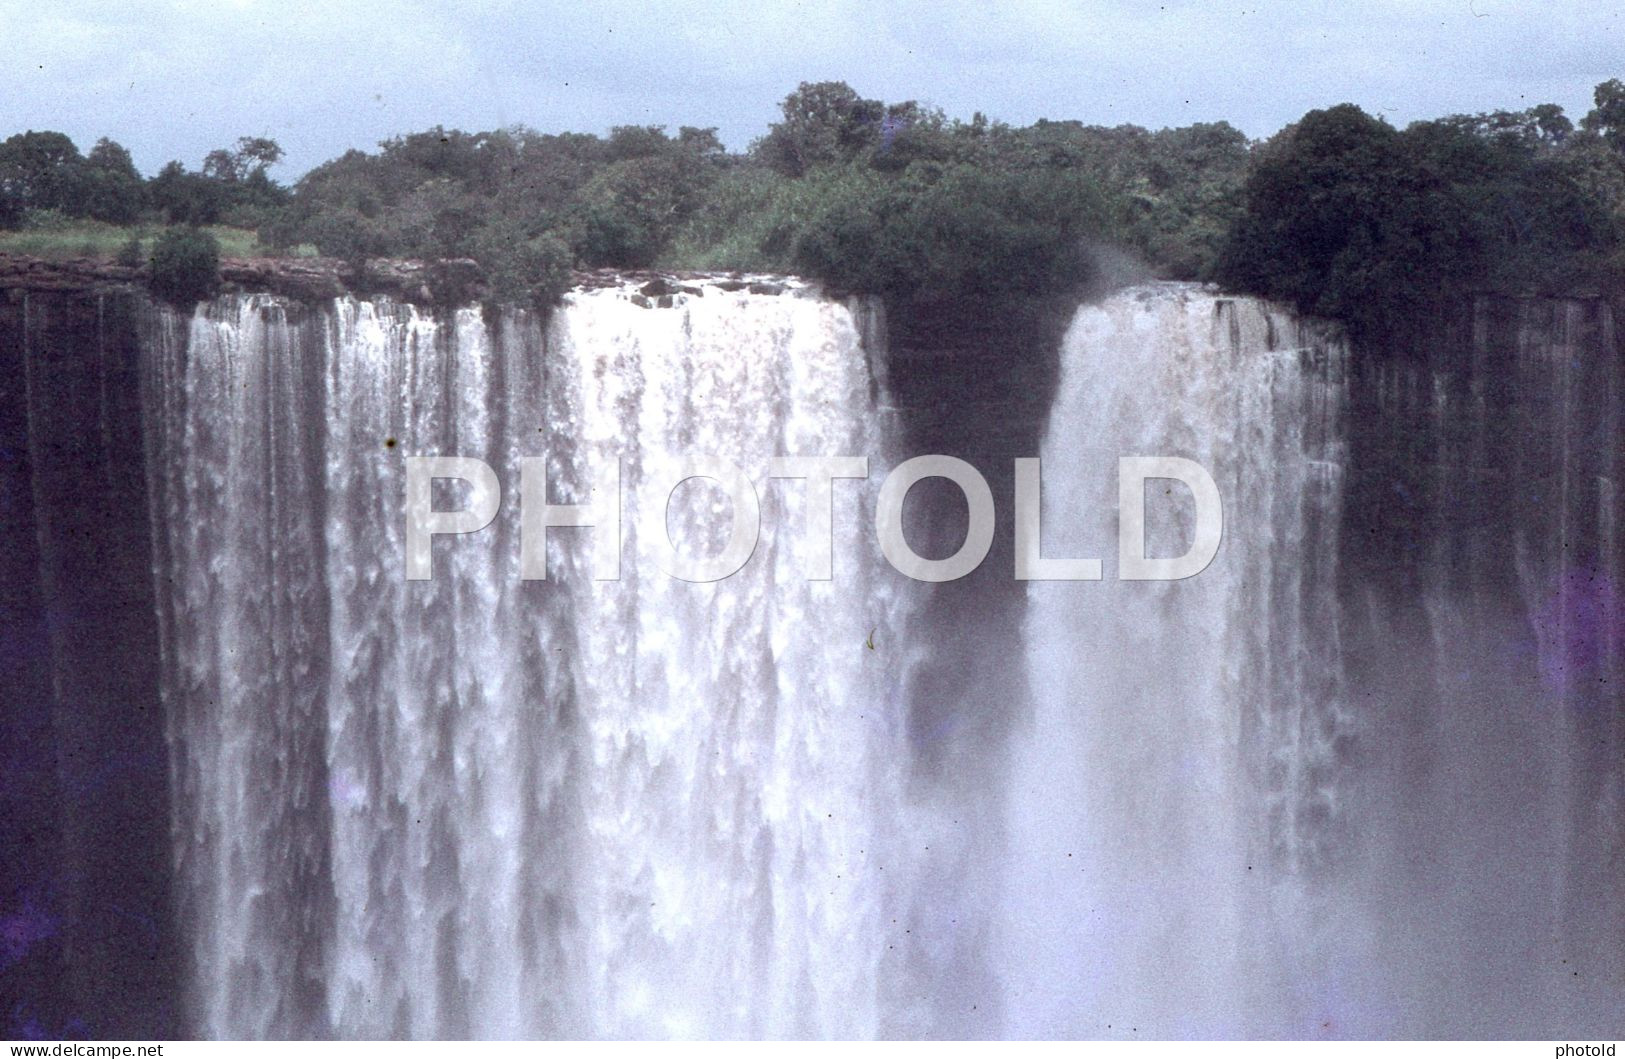 44 SLIDES SET 1968 ANGOLA AFRICA AFRIQUE ORIGINAL AMATEUR 35mm DIAPOSITIVE SLIDE Not PHOTO No FOTO NB4060 - Dias